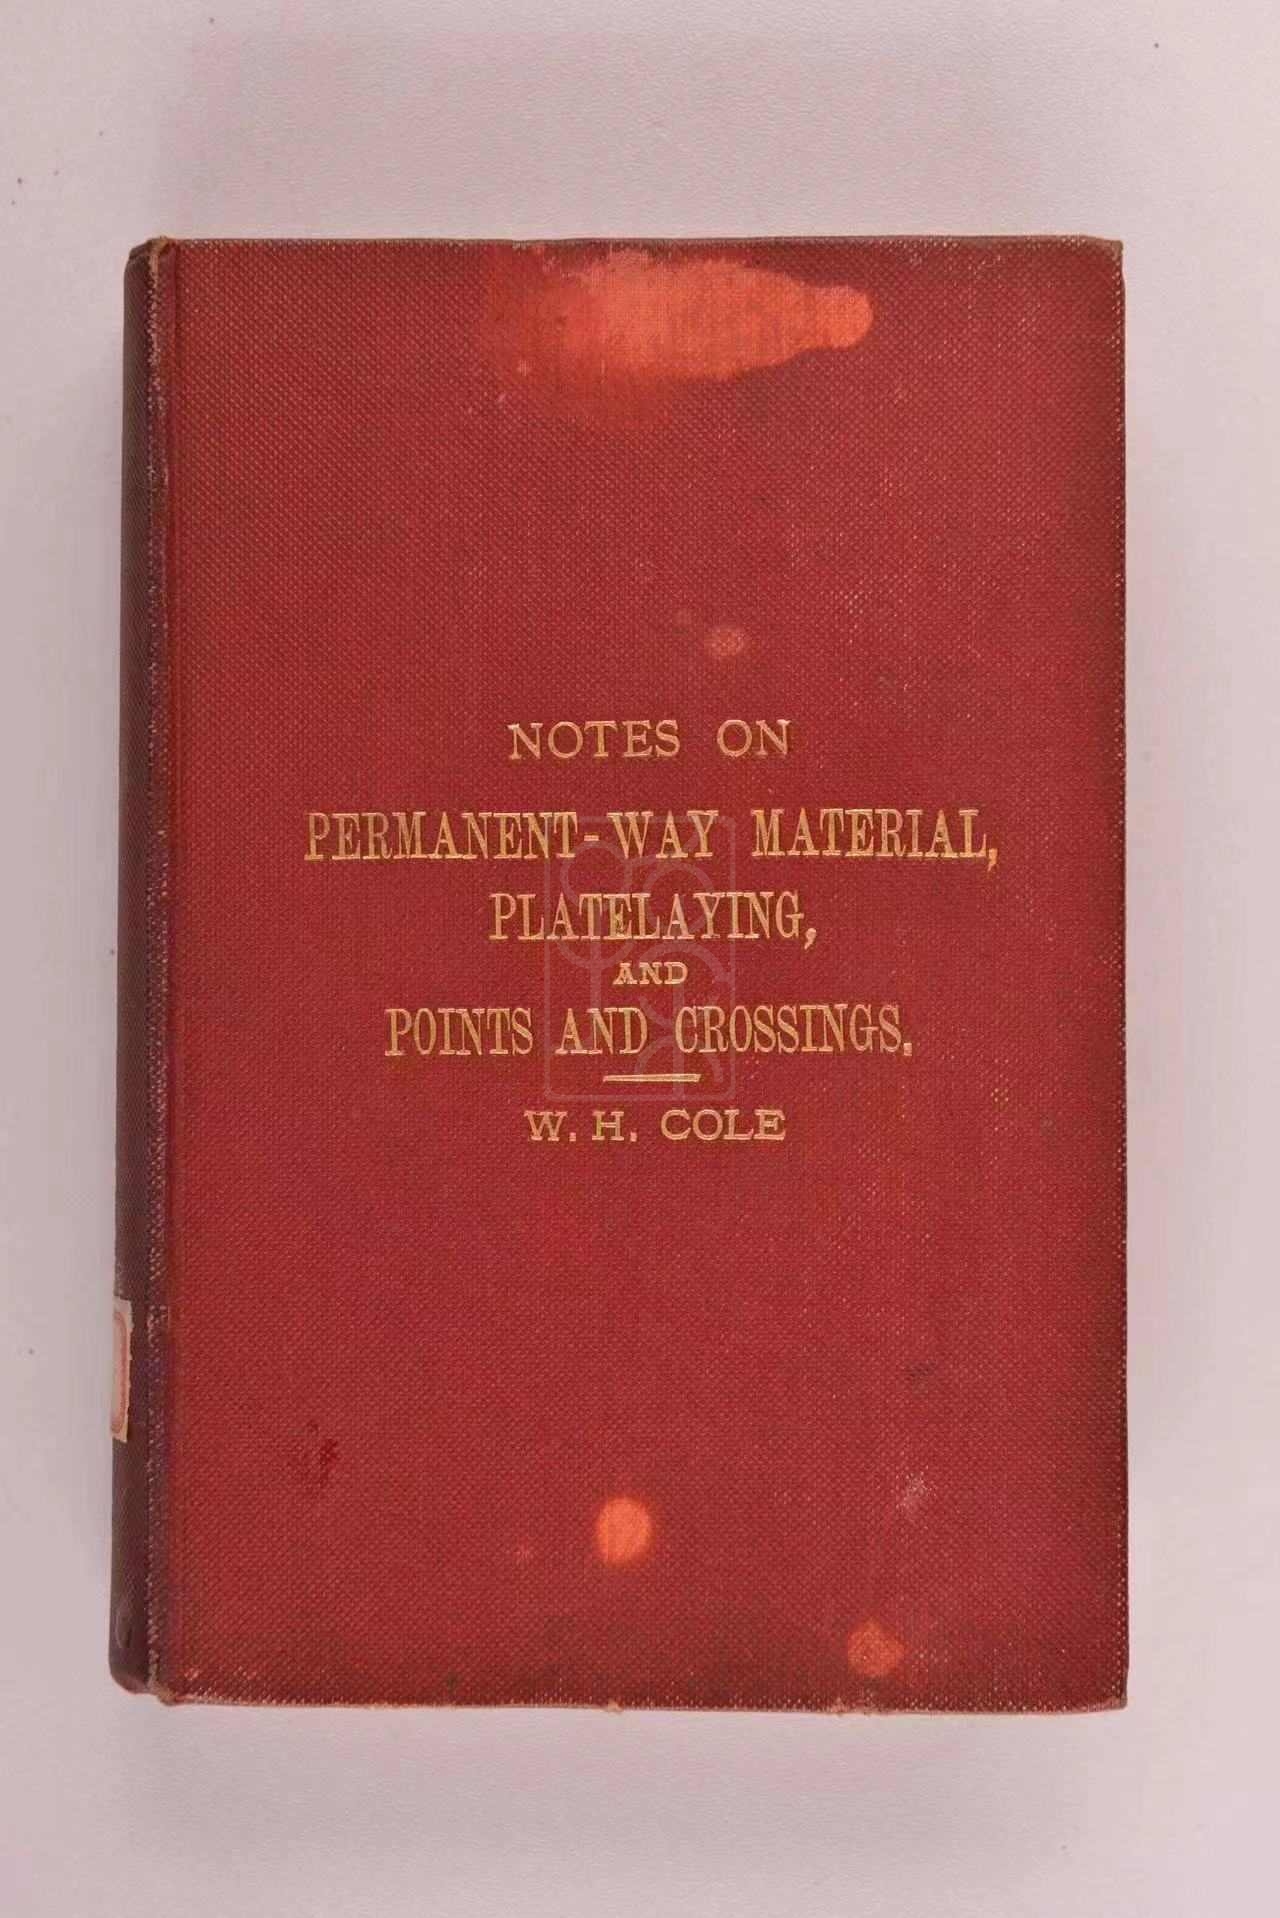 1905年版《永久性铁路材料及其他》（Notes on Permanent-Way Material Platelaying & Points & Crossings）